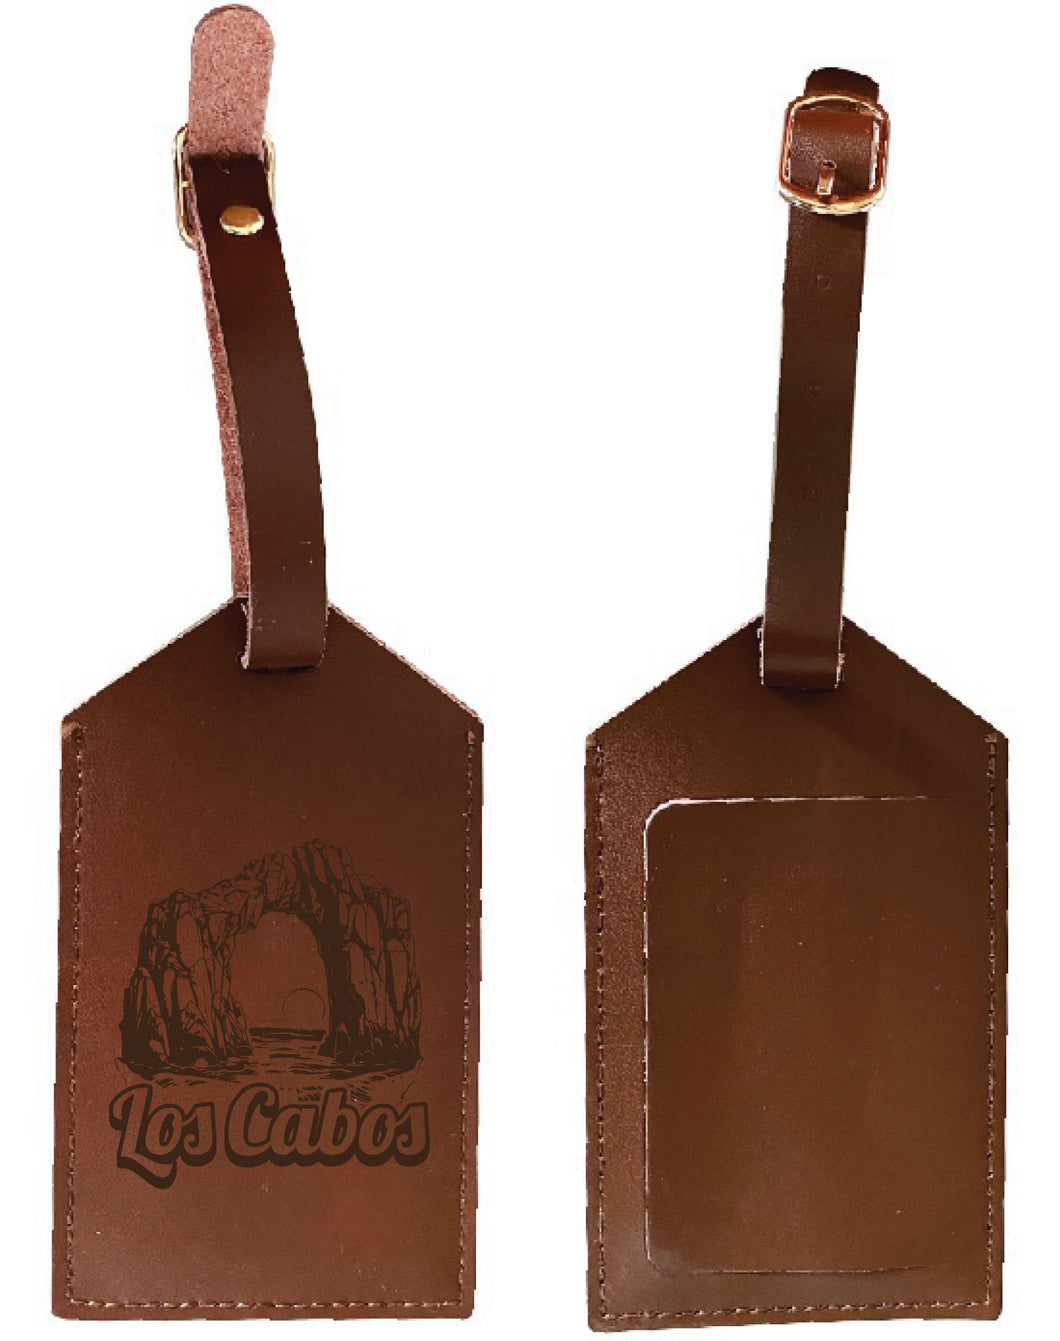 Los Cabos Mexico Souvenir Leather Luggage Tag